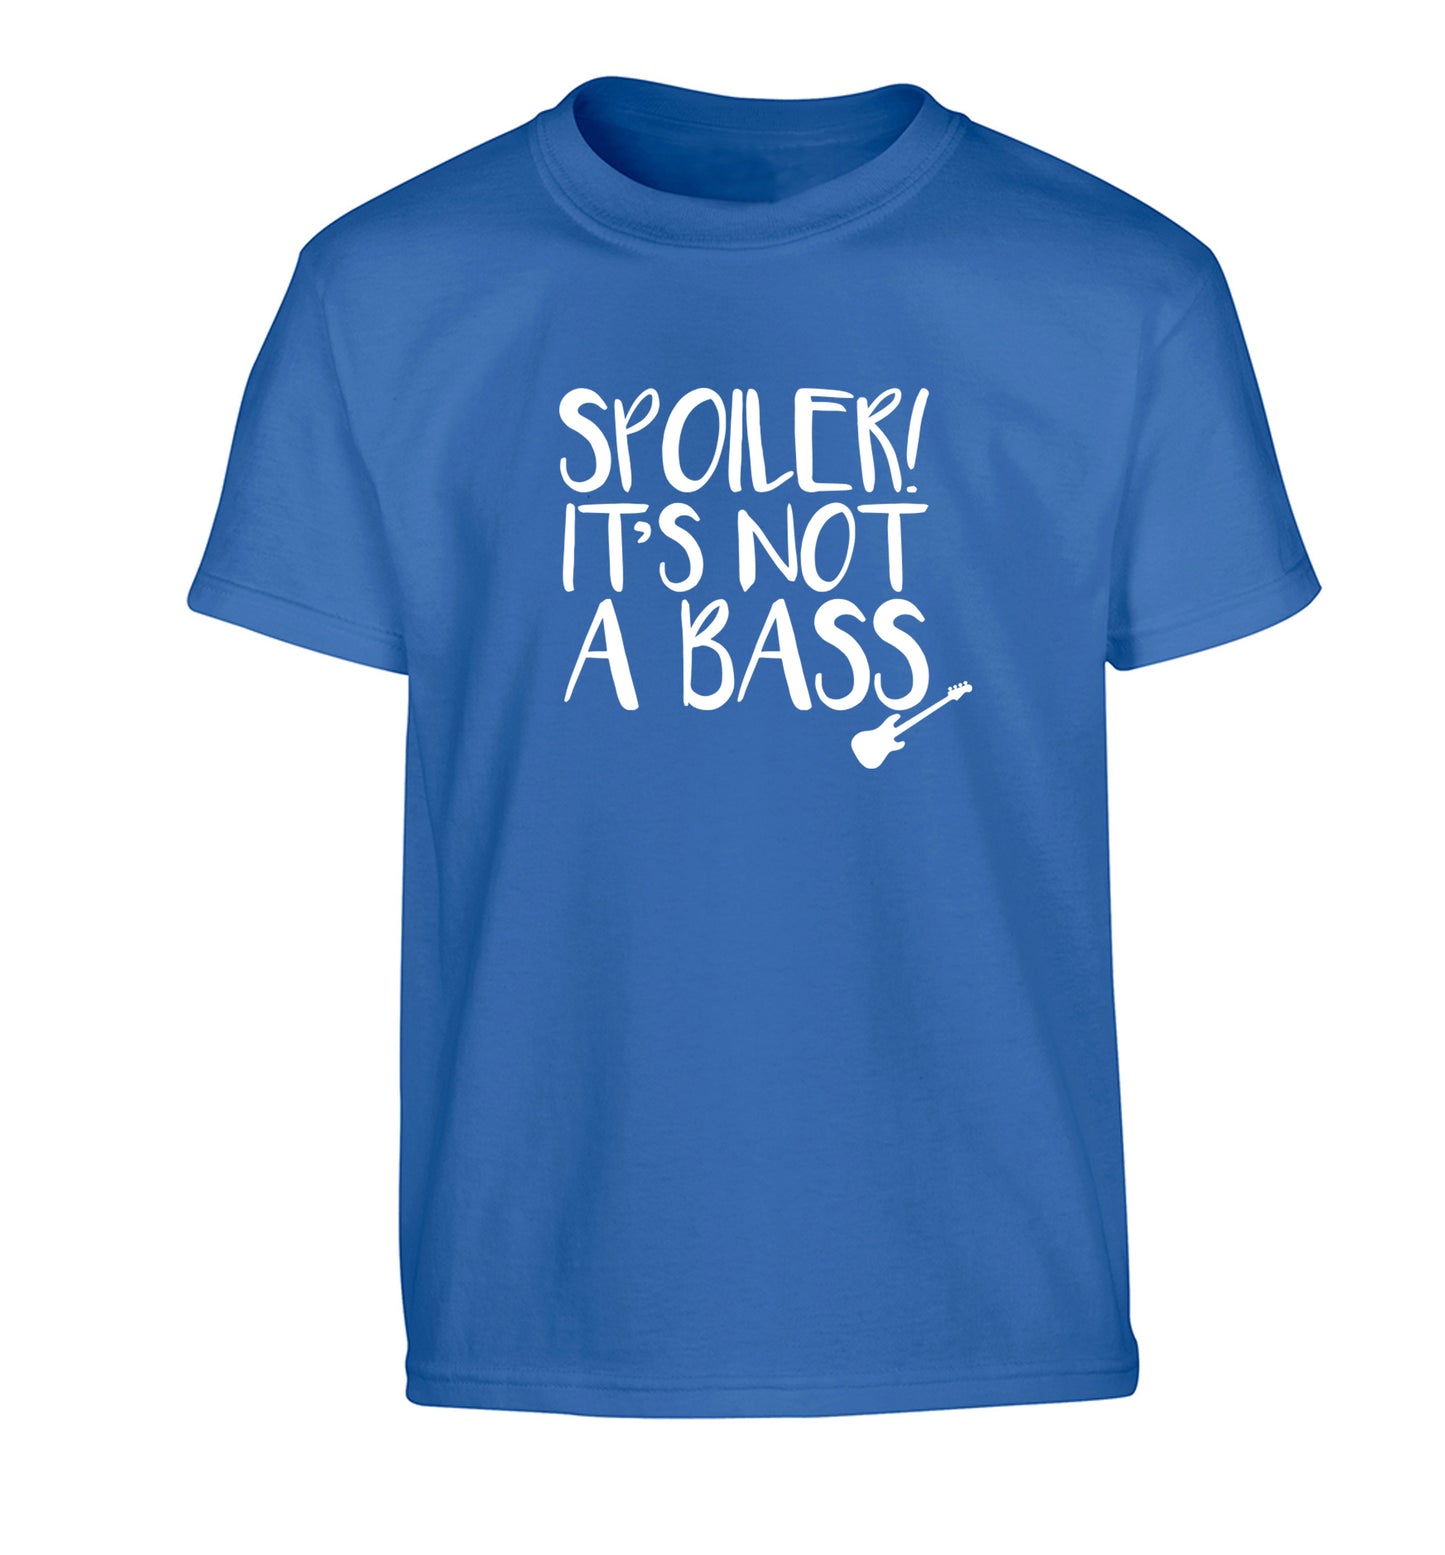 Spoiler it's not a bass Children's blue Tshirt 12-13 Years